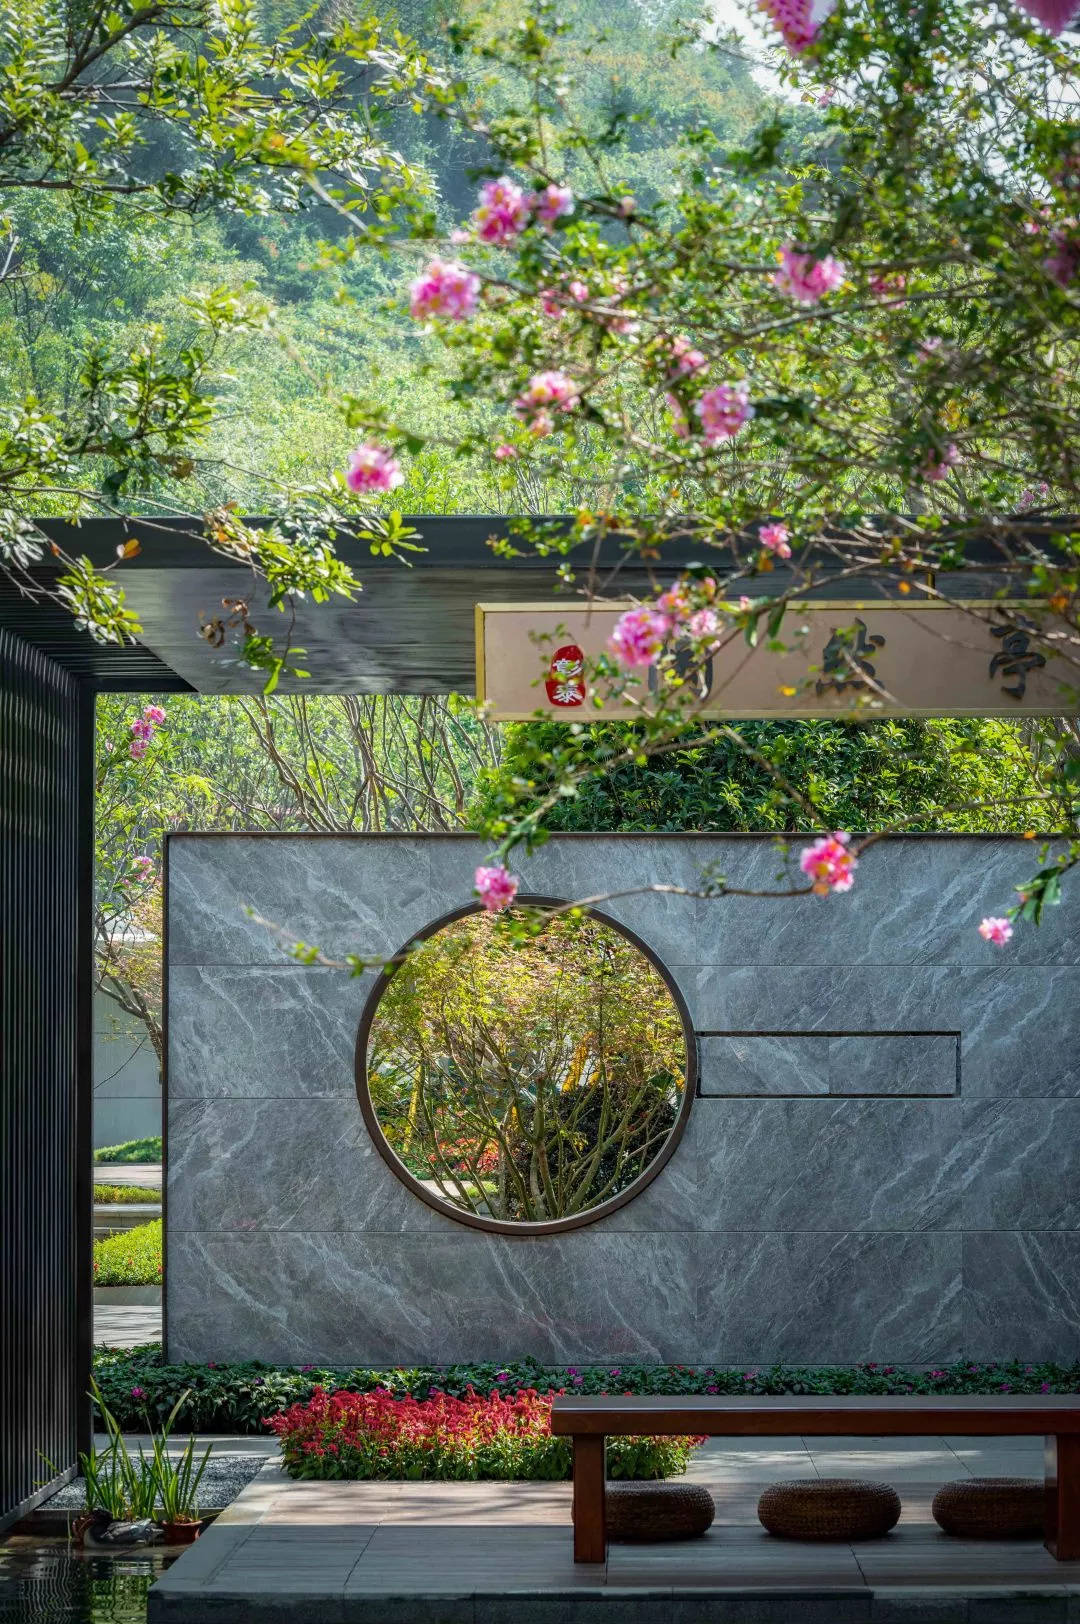 原创庭院装修:12款现代中式花园庭院设计,果然院子还是中式的最美